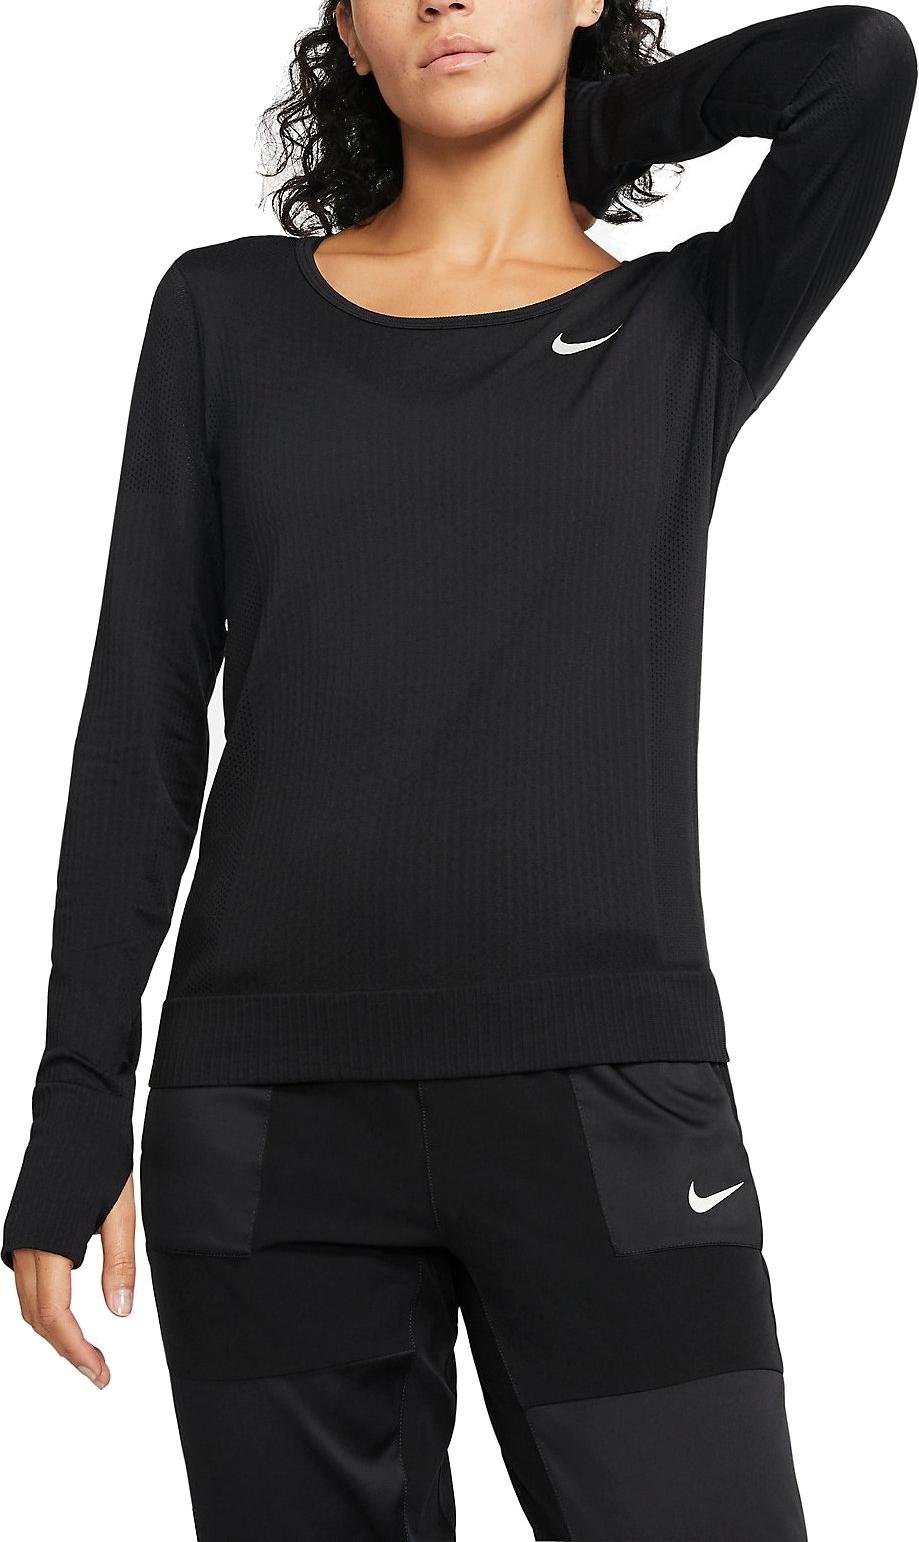 Tričko s dlhým rukávom Nike W NK INFINITE TOP LS